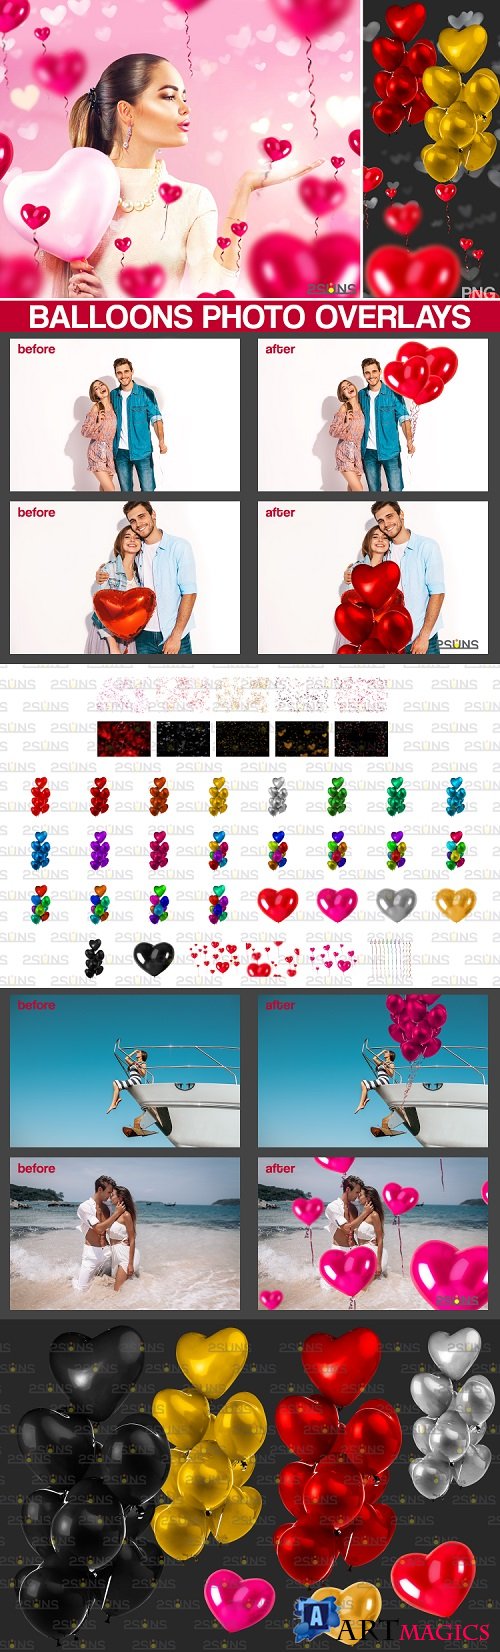 40 Heart balloons photo overlays, valentines Photoshop - 448627